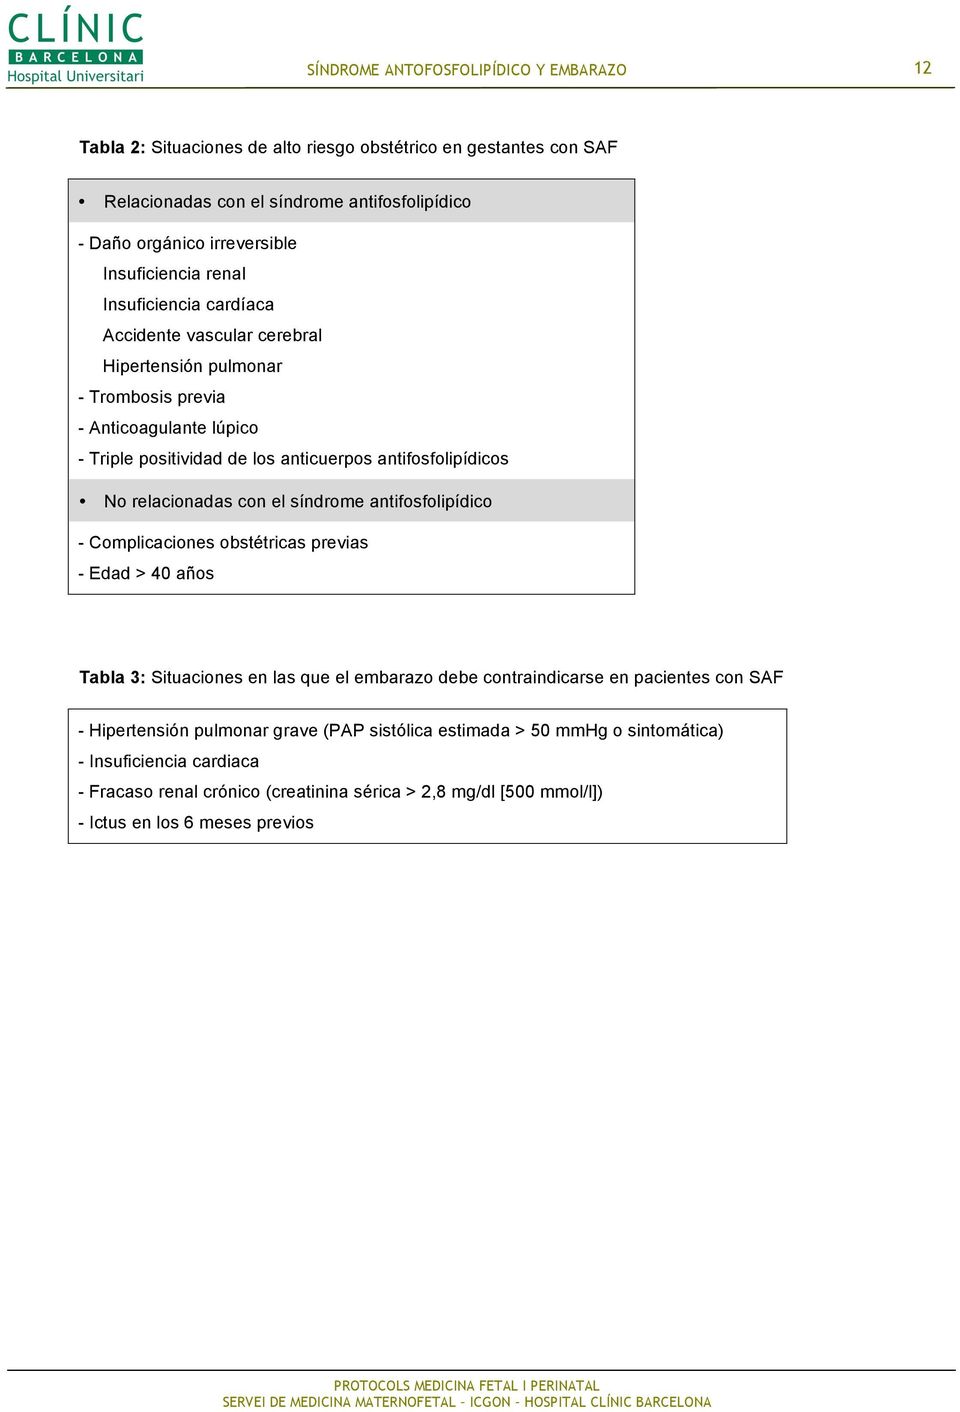 síndrome antifosfolipídico - Complicaciones obstétricas previas - Edad > 40 años Tabla 3: Situaciones en las que el embarazo debe contraindicarse en pacientes con SAF - Hipertensión